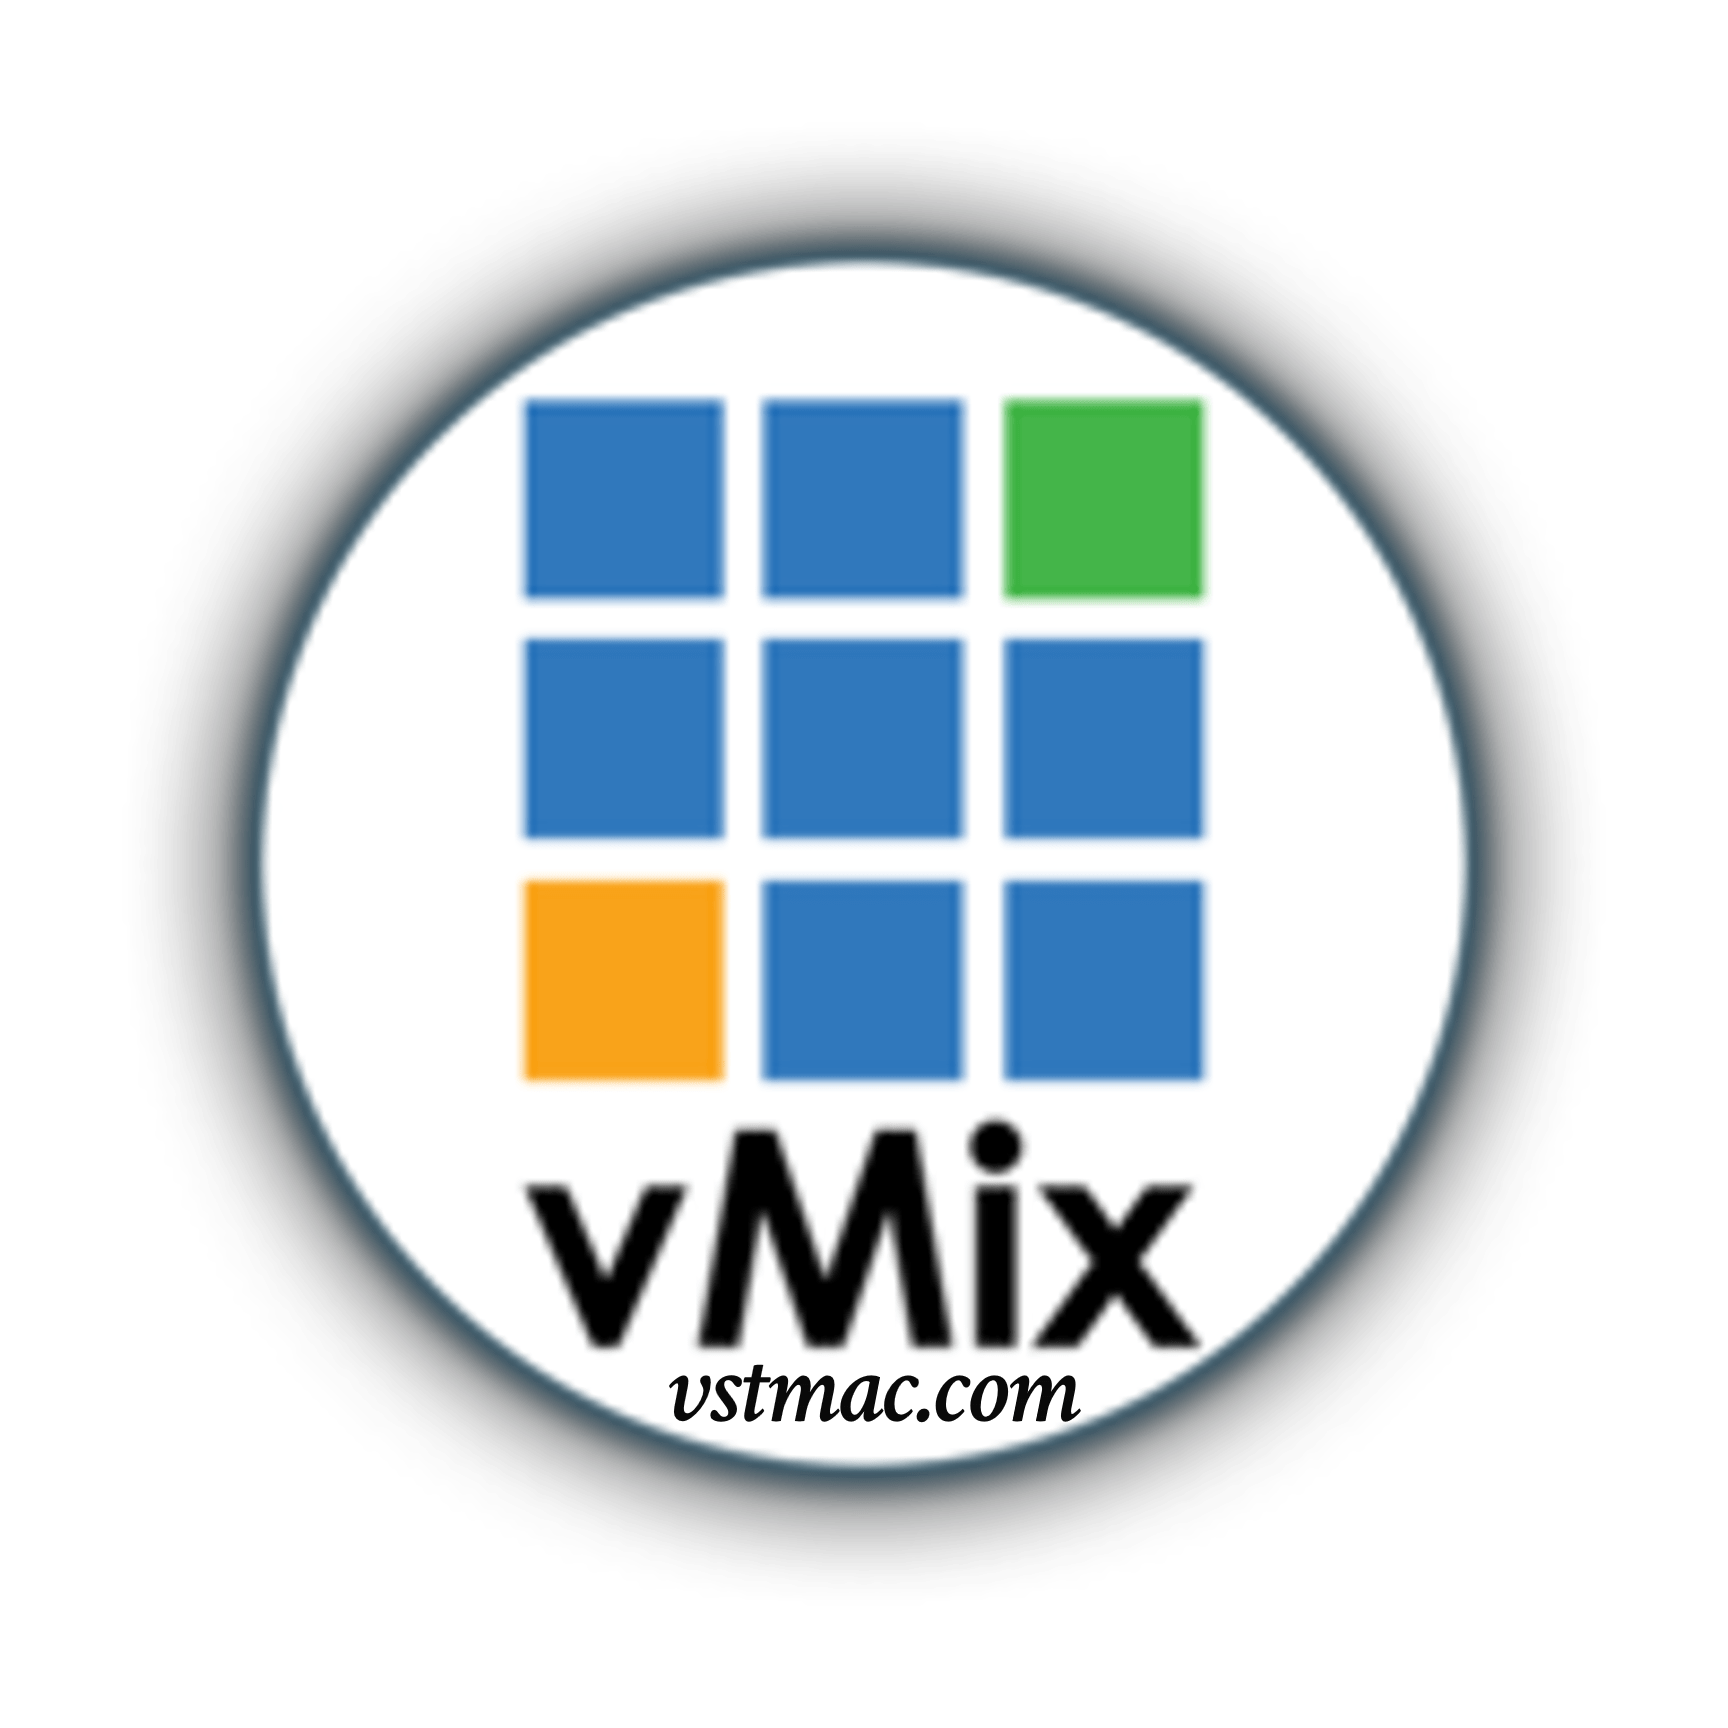 vmix for mac